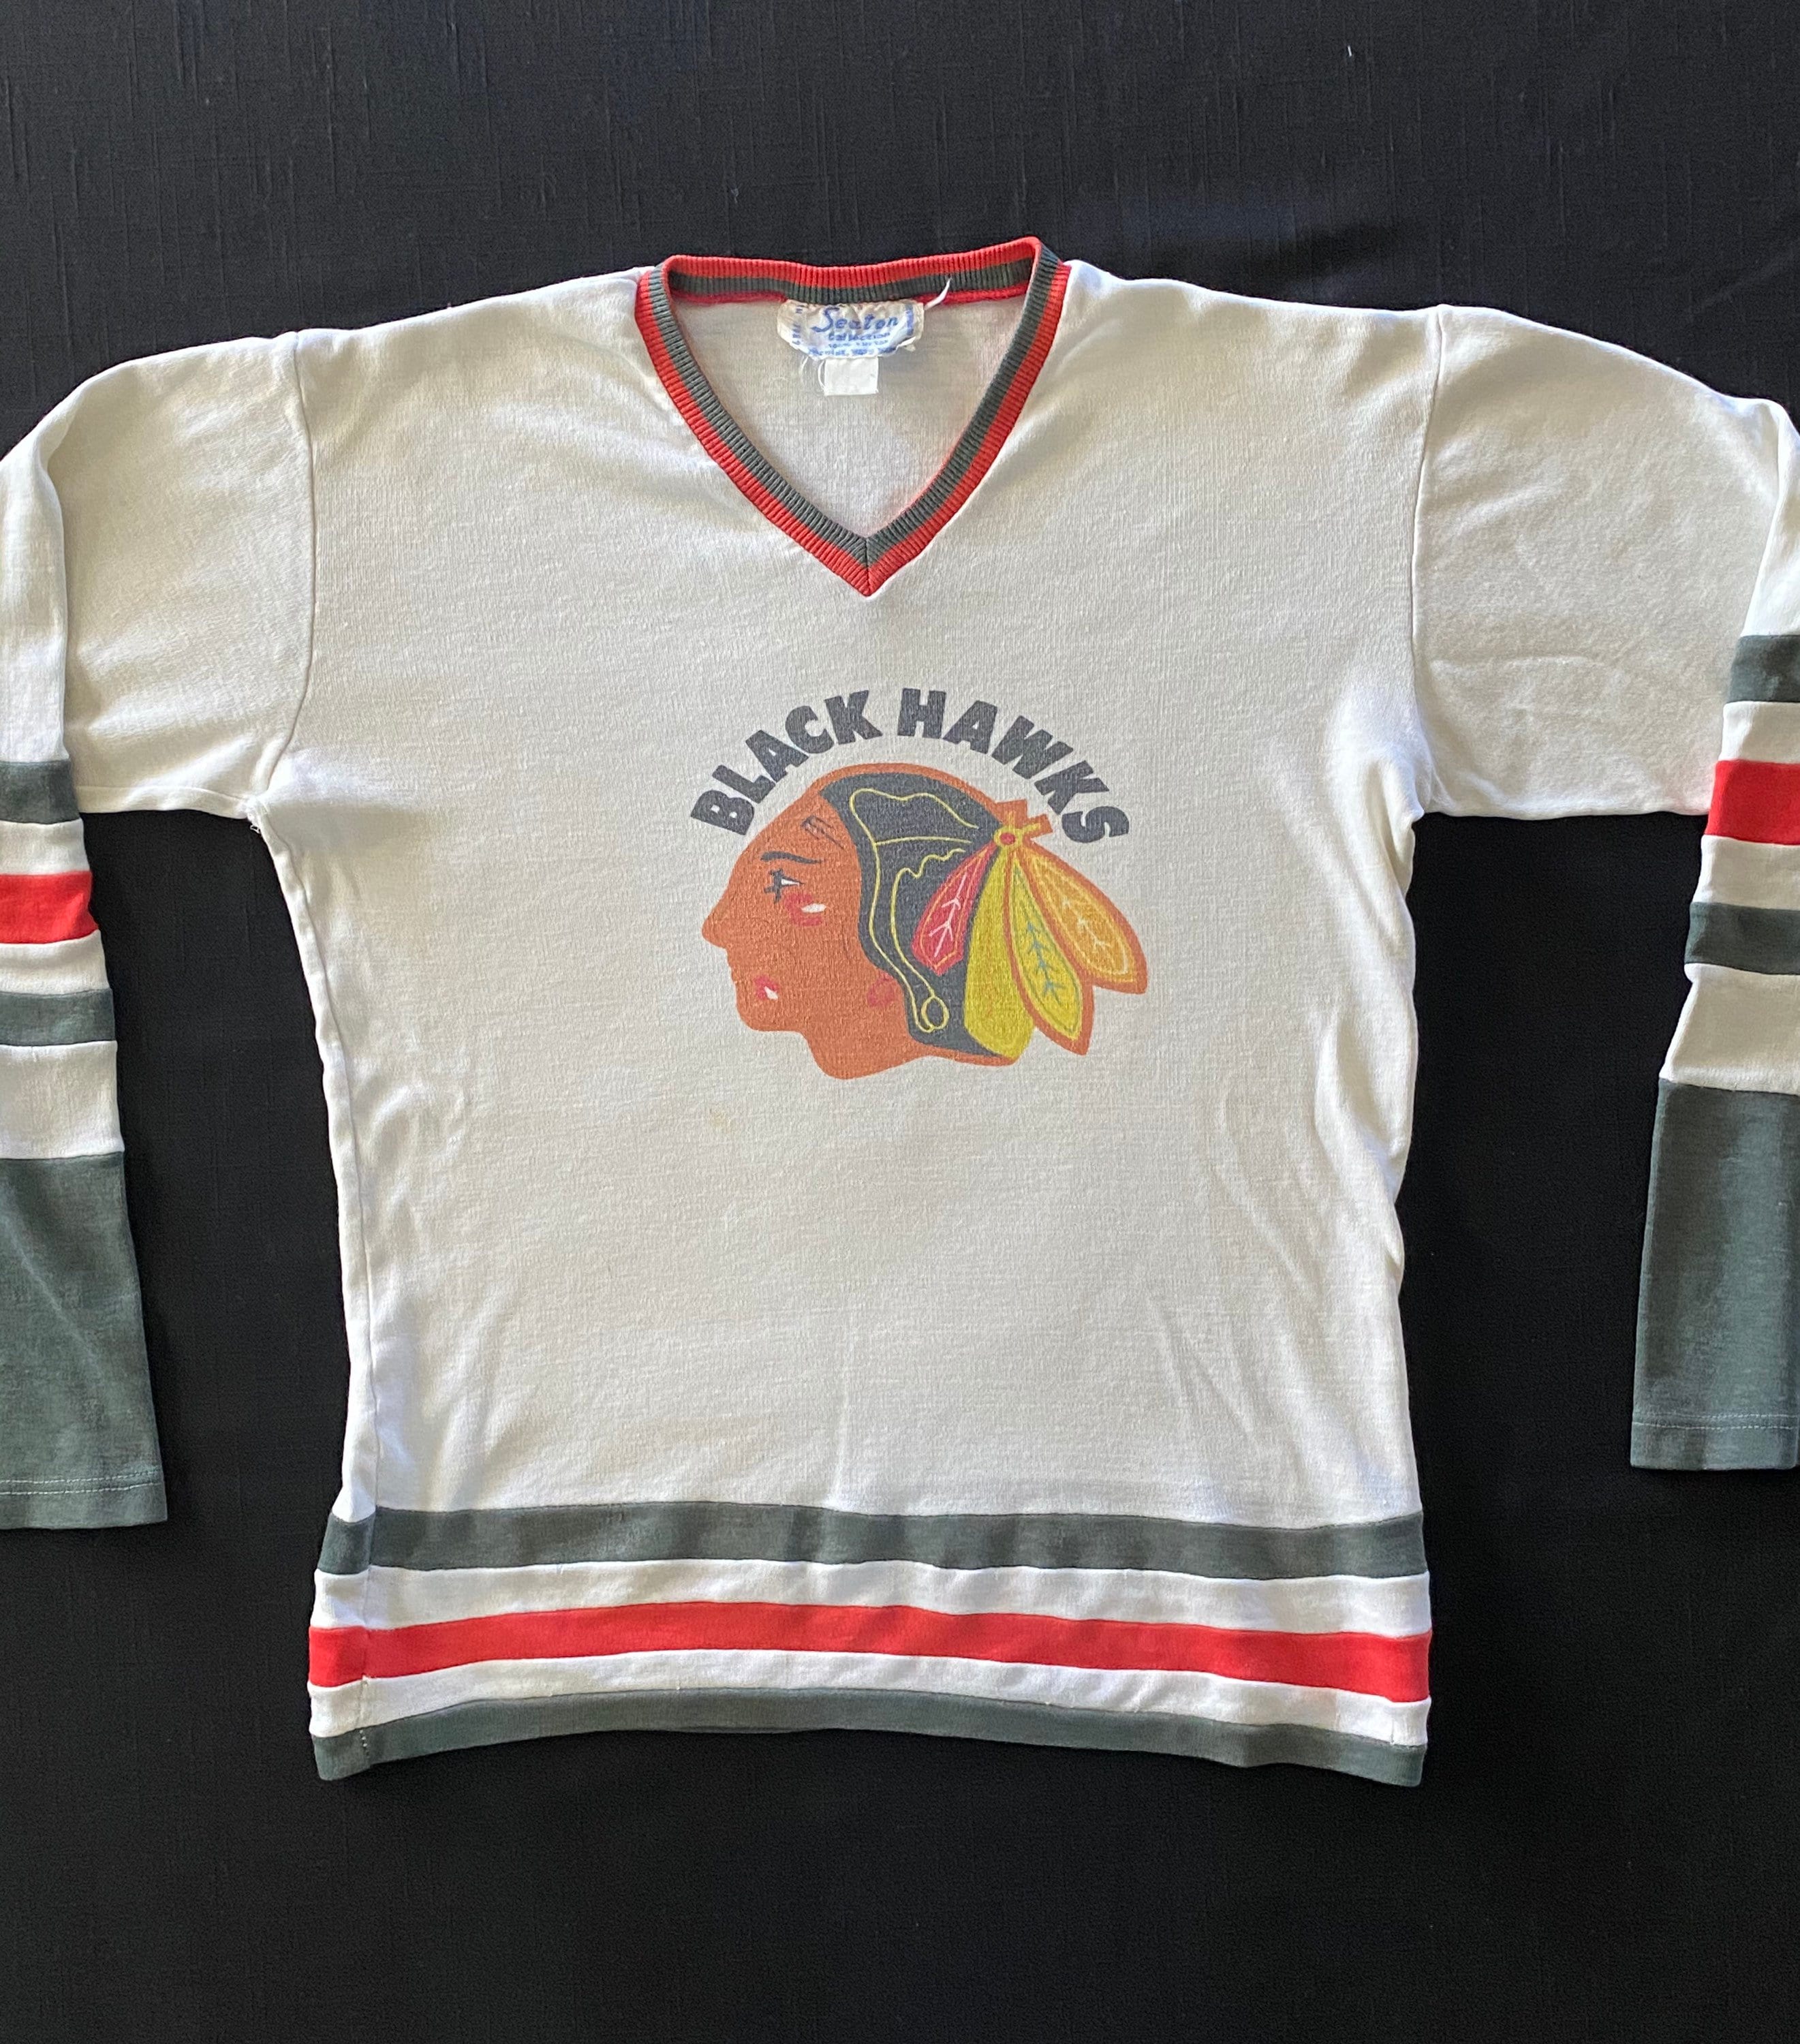 Chicago Blackhawks NHL Vintage Hockey Shirt Unisex Men Women S-5XL KV4414 -  Body Logic